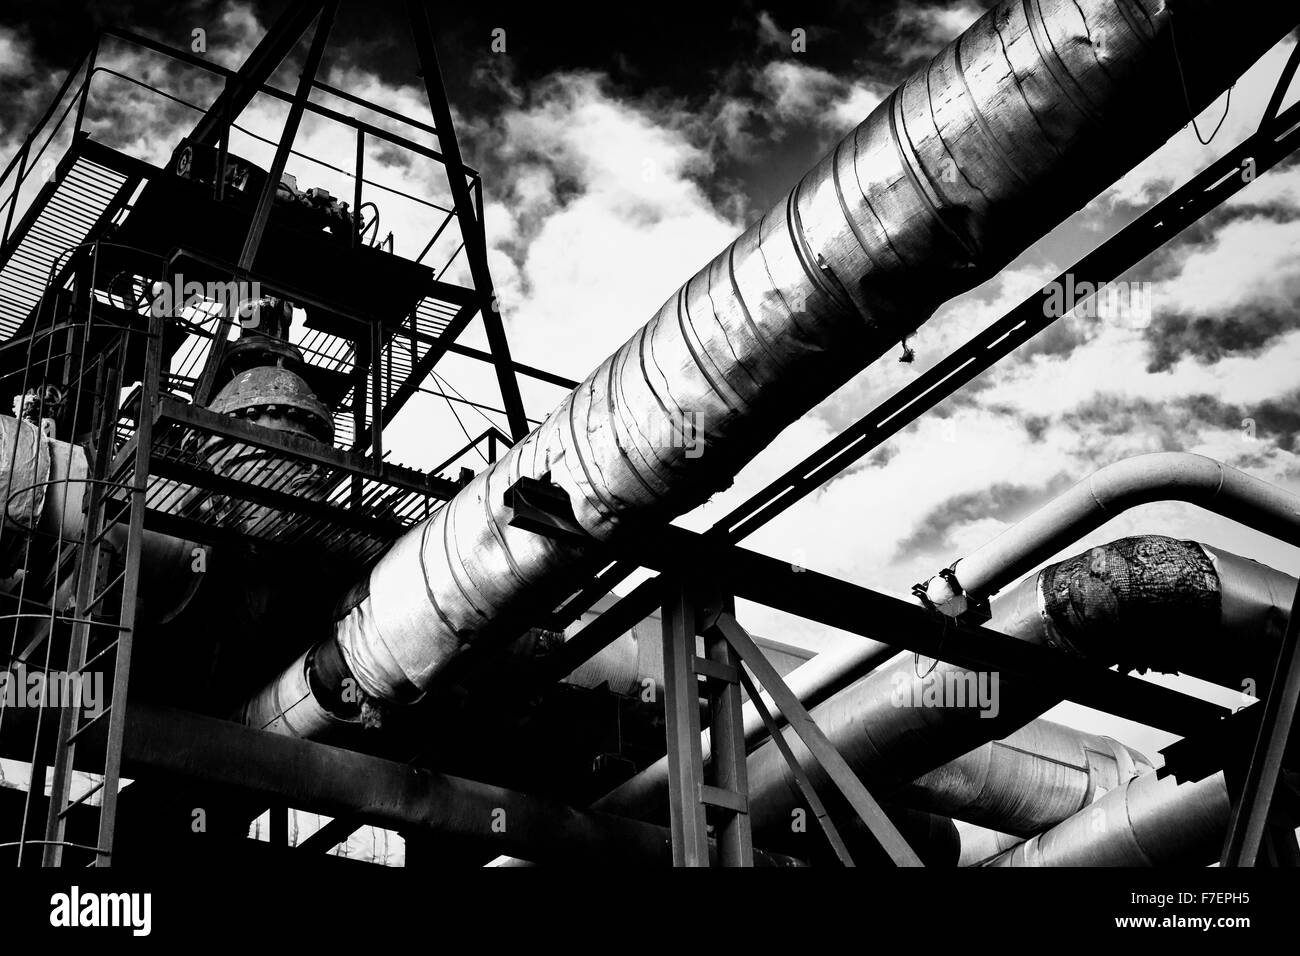 Metal piping industriale di una fabbrica che porta acqua/gas/materiali e passerelle in metallo con un cielo nuvoloso in bianco e nero mo Foto Stock